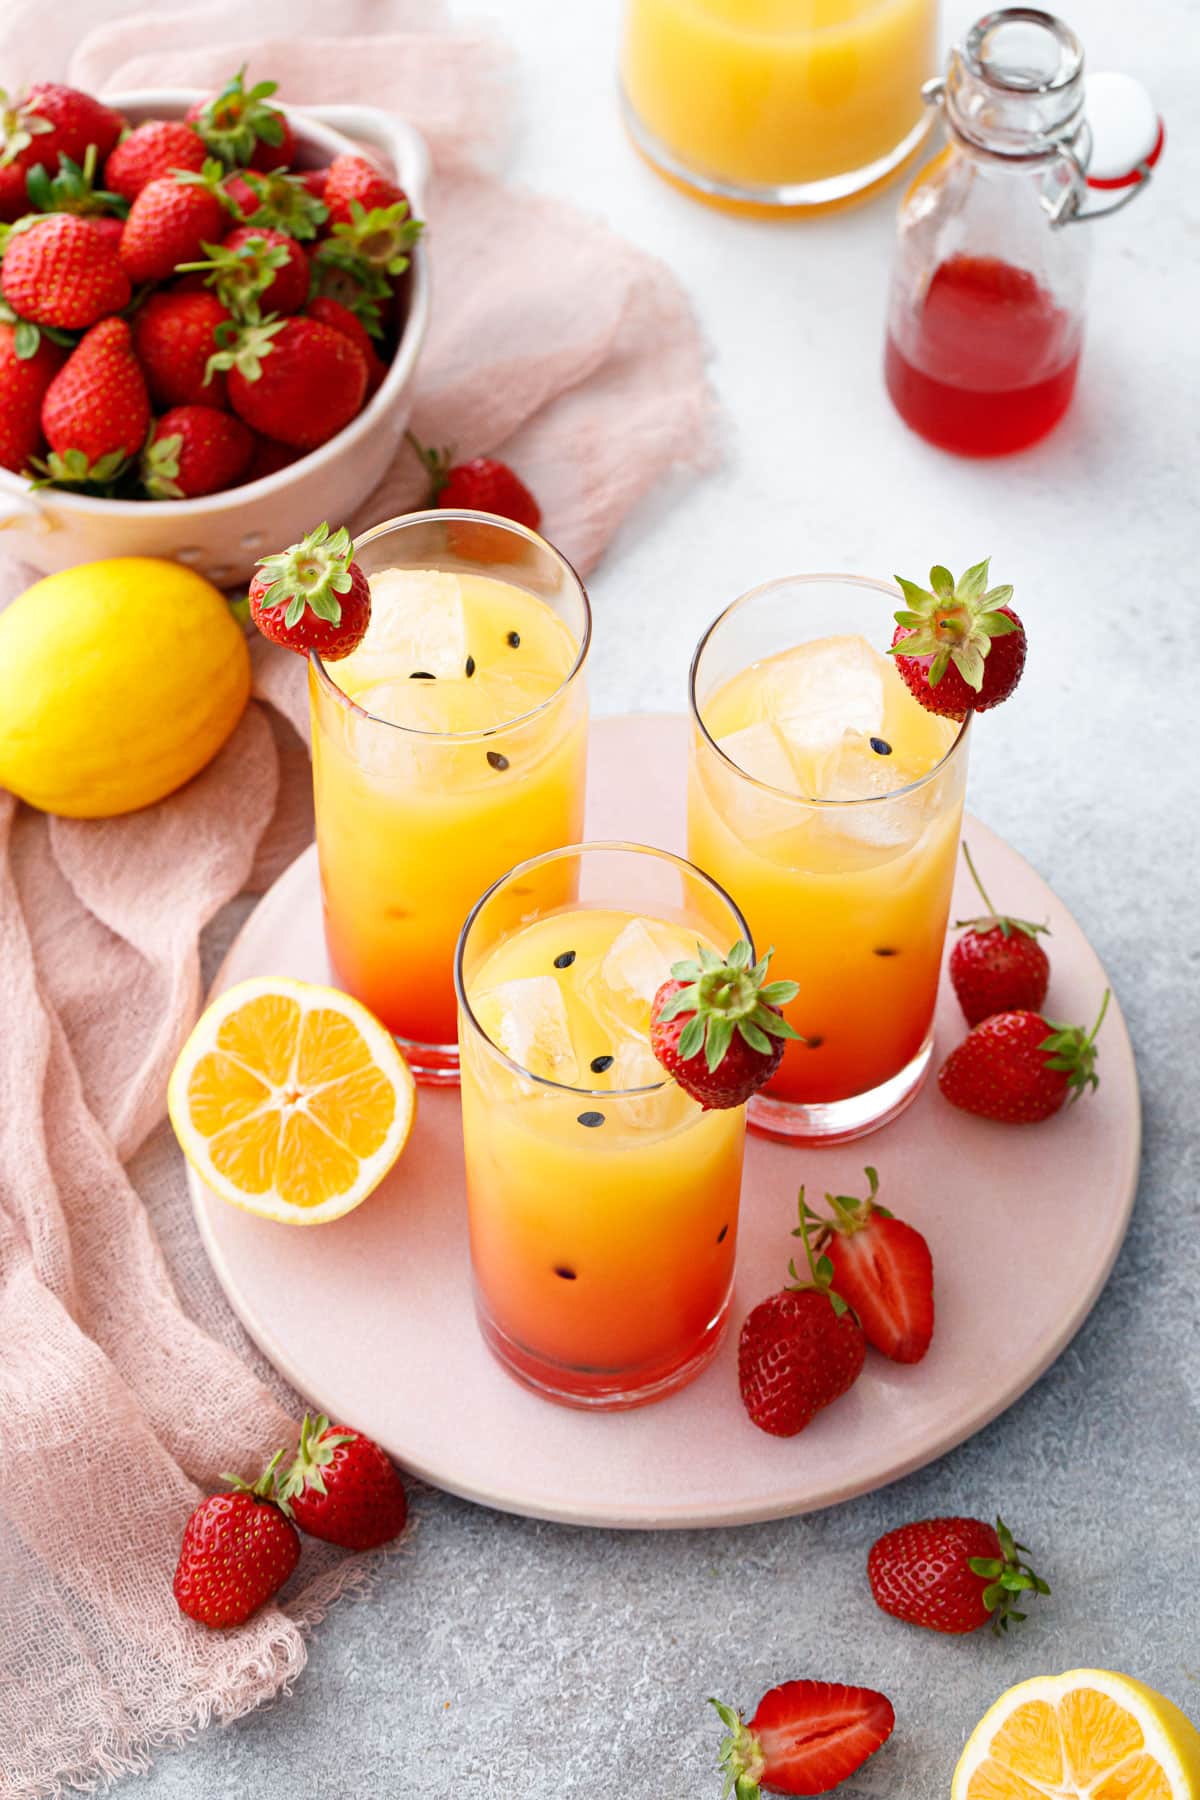 Три стакана клубничного лимонада с маракуйей, окрашенного градиентом от красного к желтому с черными семенами маракуйи.